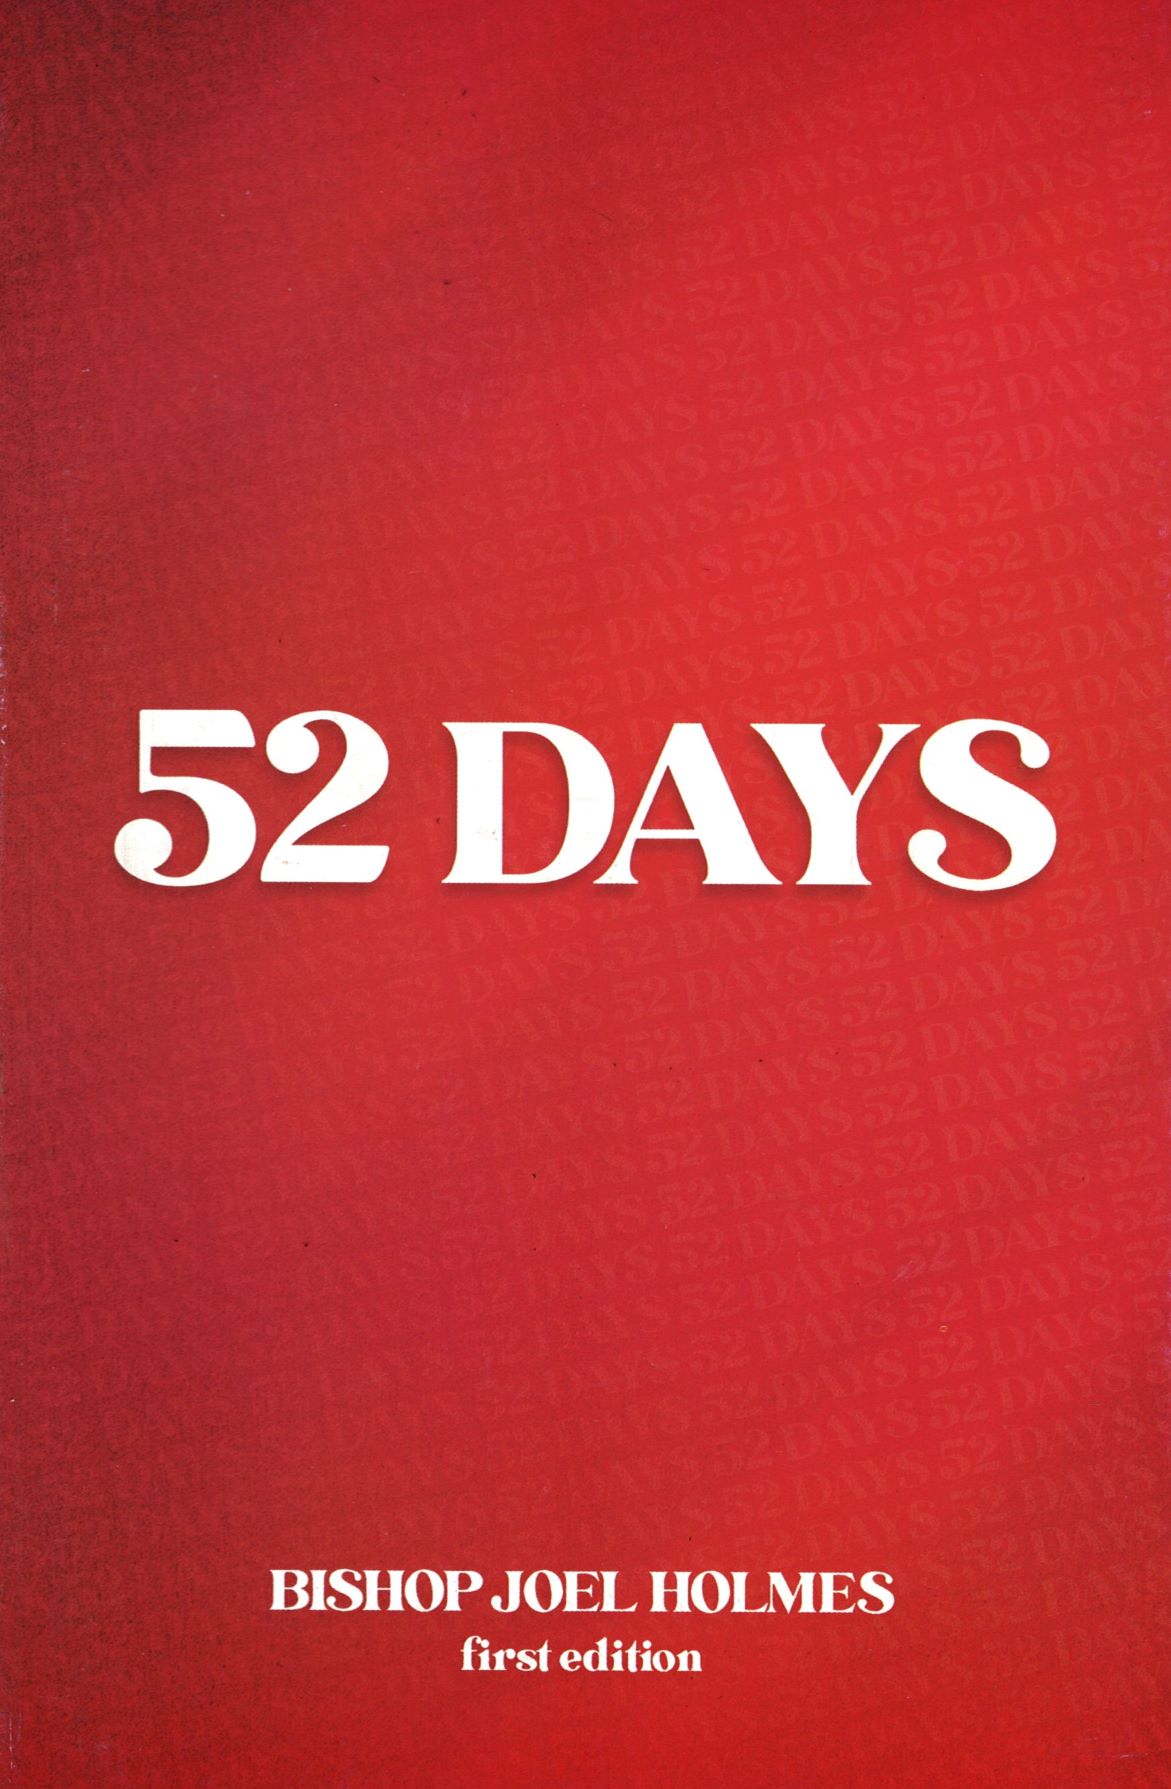 52 Days - Bishop Joel Holmes